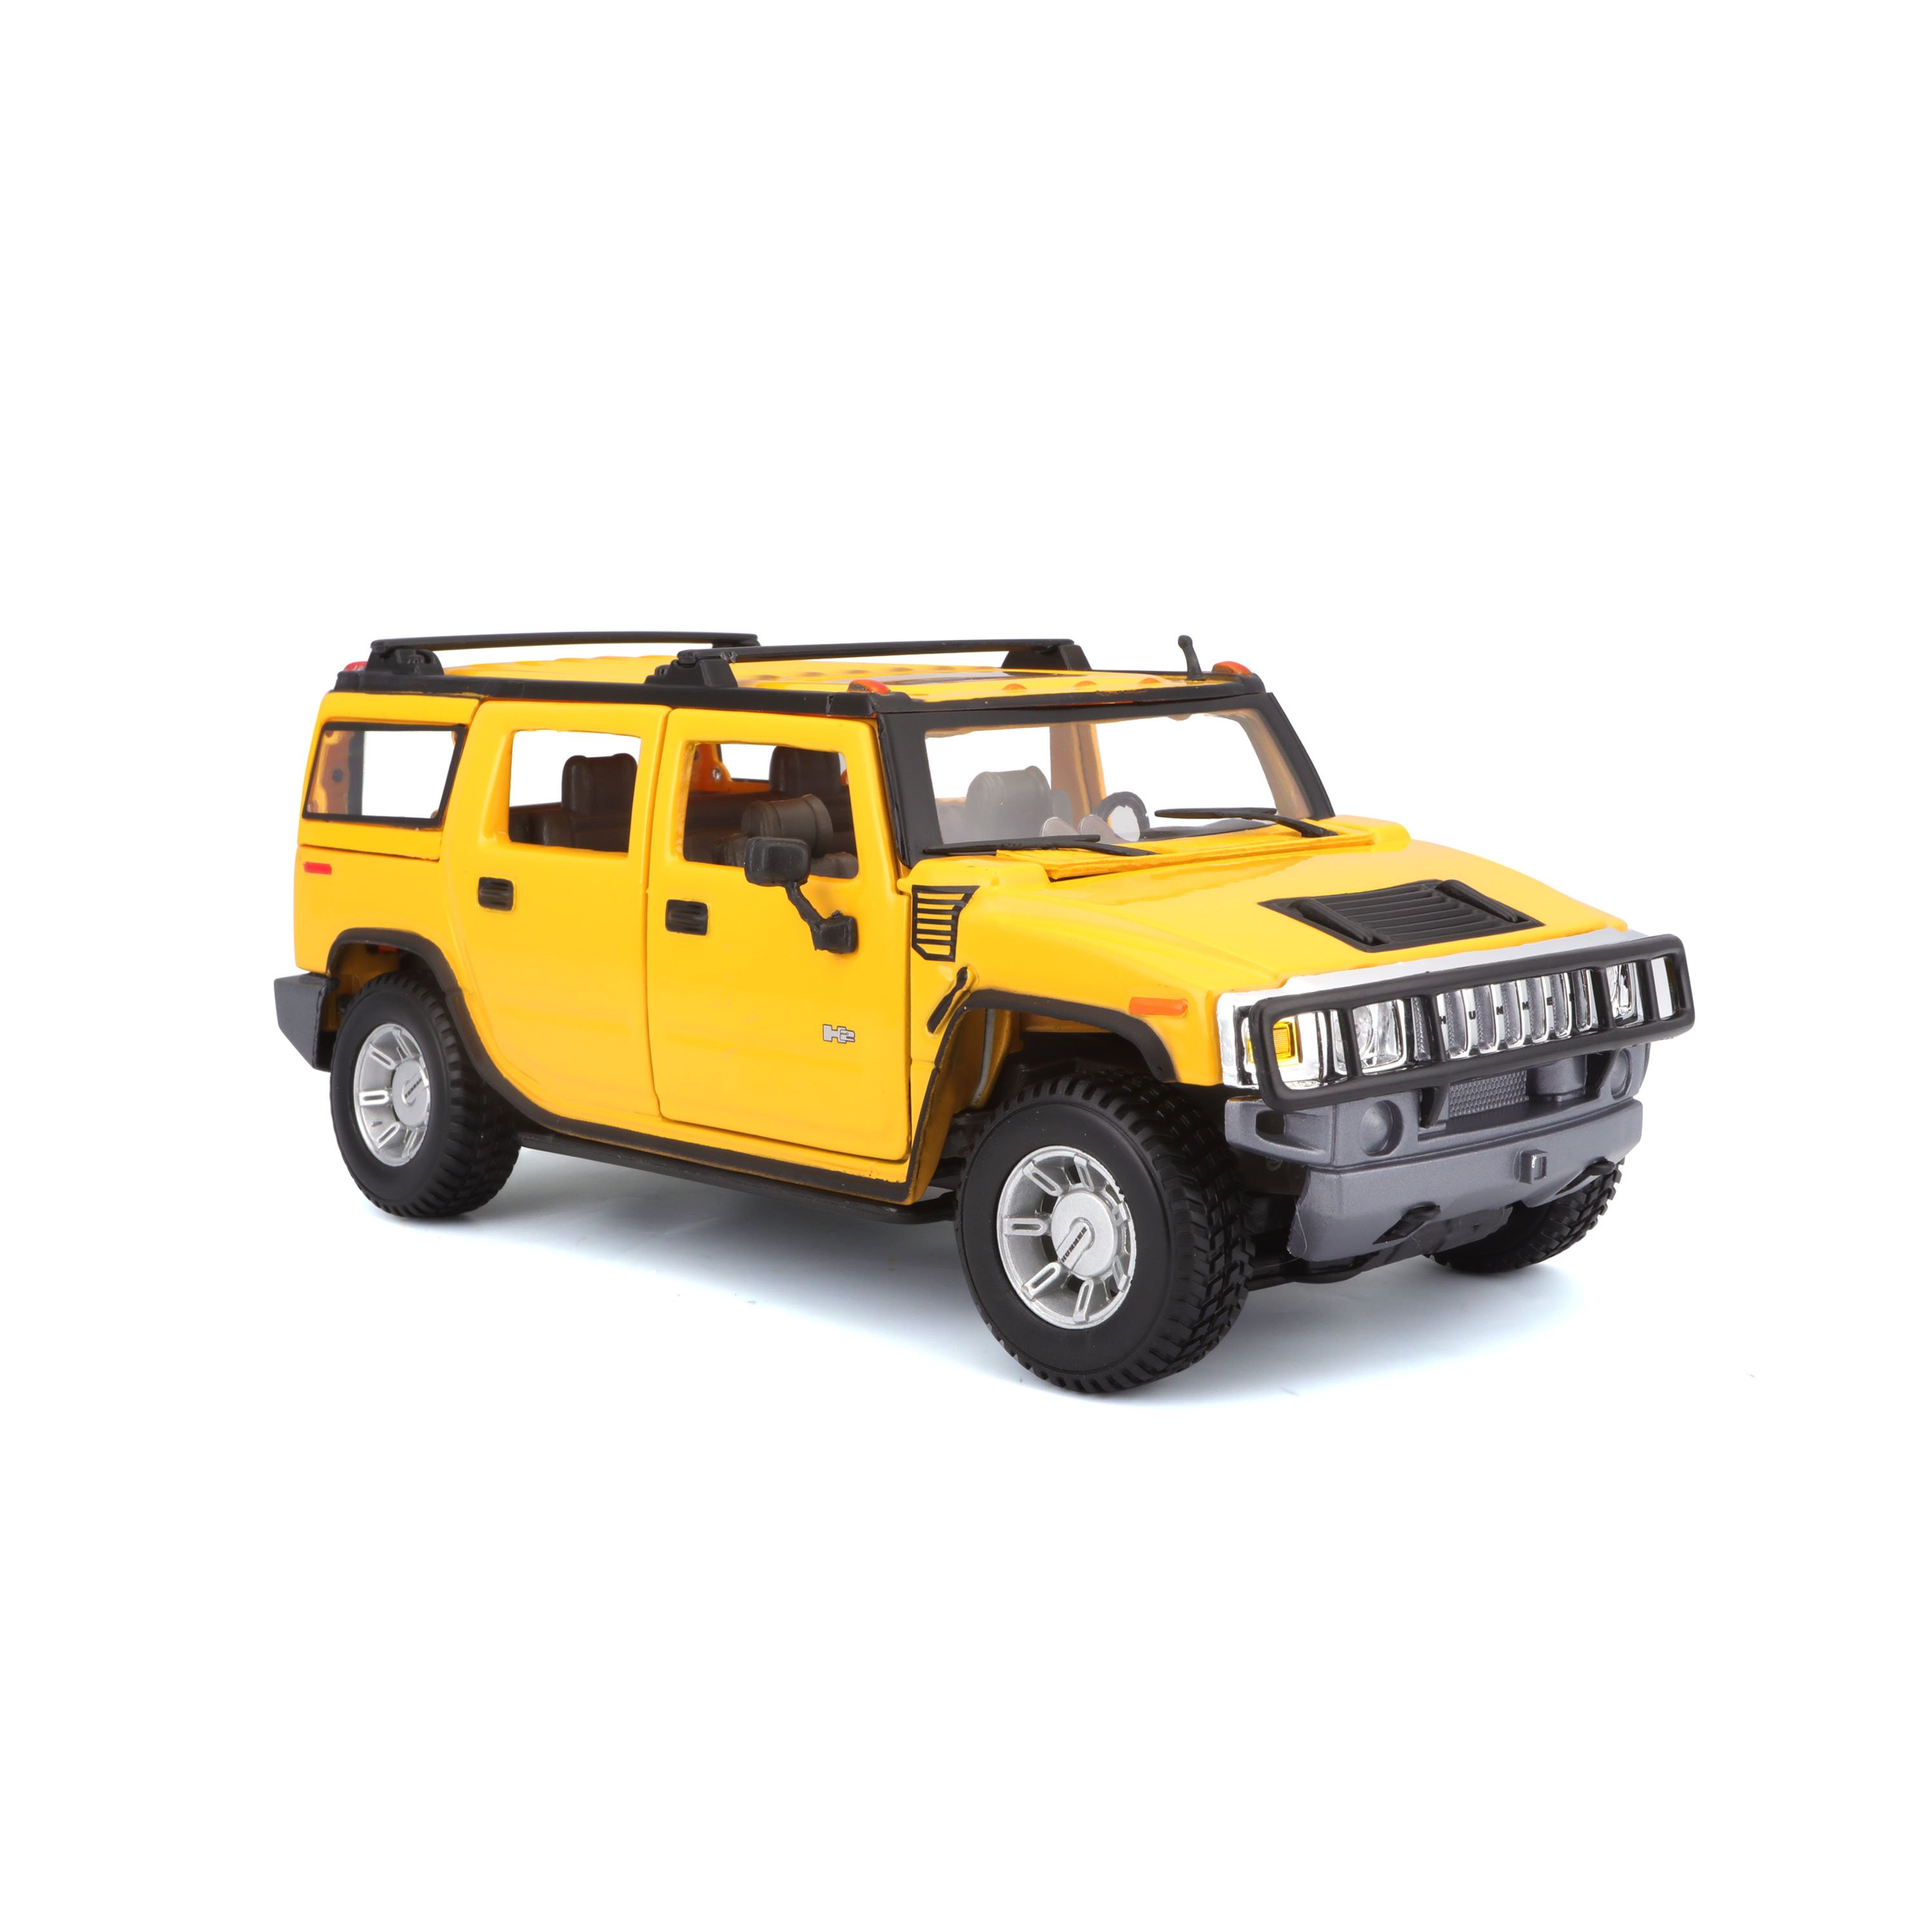 Игровая автомодель Maisto Hummer H2 SUV 2003, жёлтый, 1:27 (31231 yellow) - фото 1